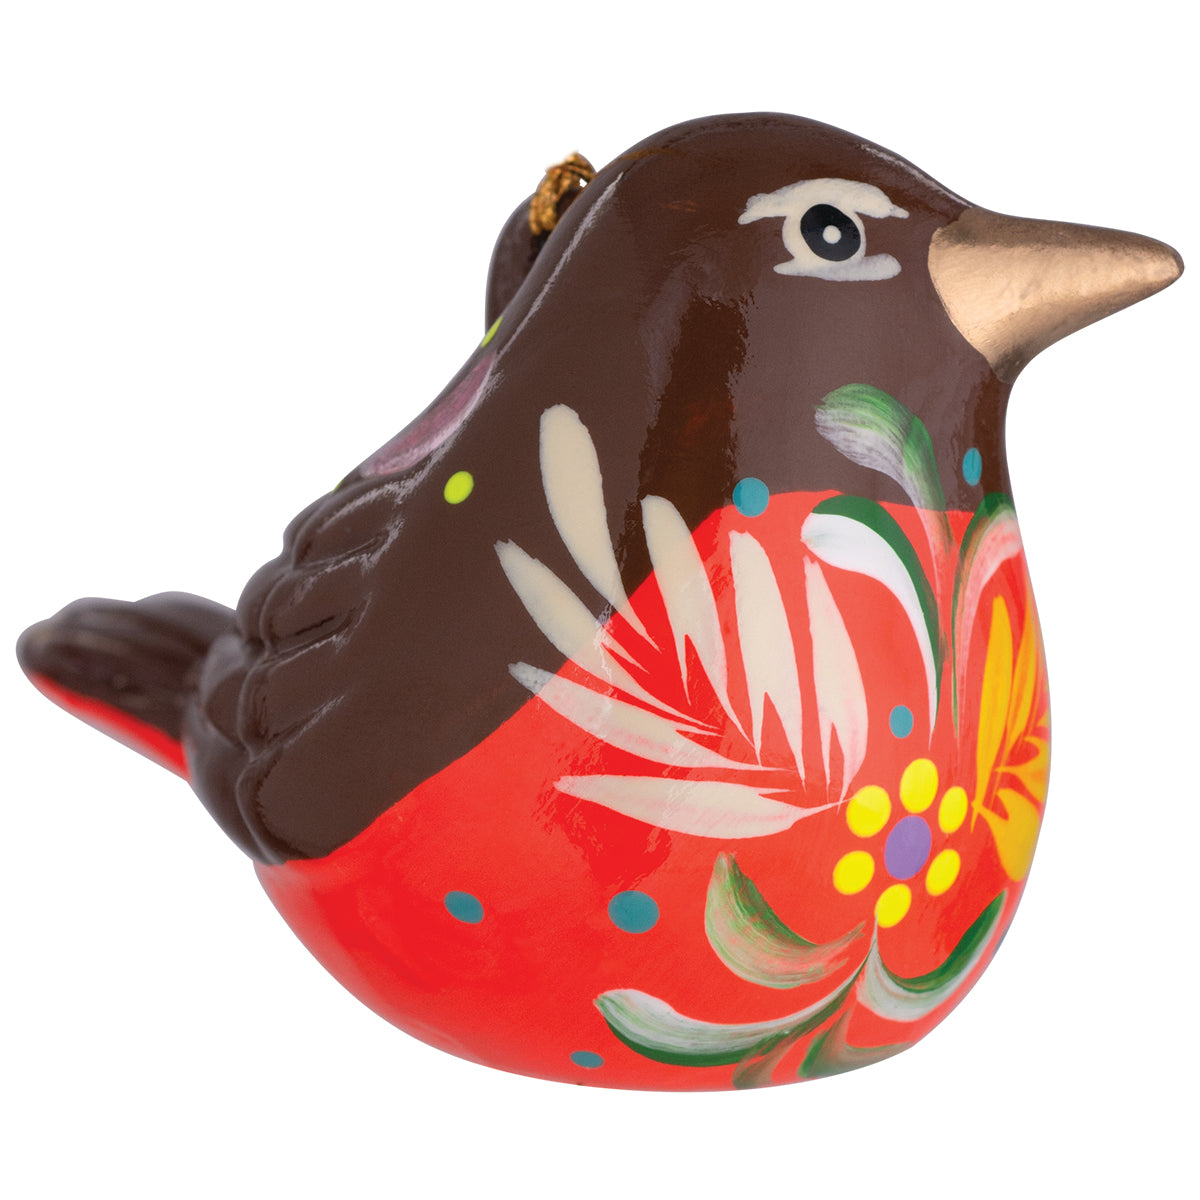 Robin - Confetti Ceramic Ornament